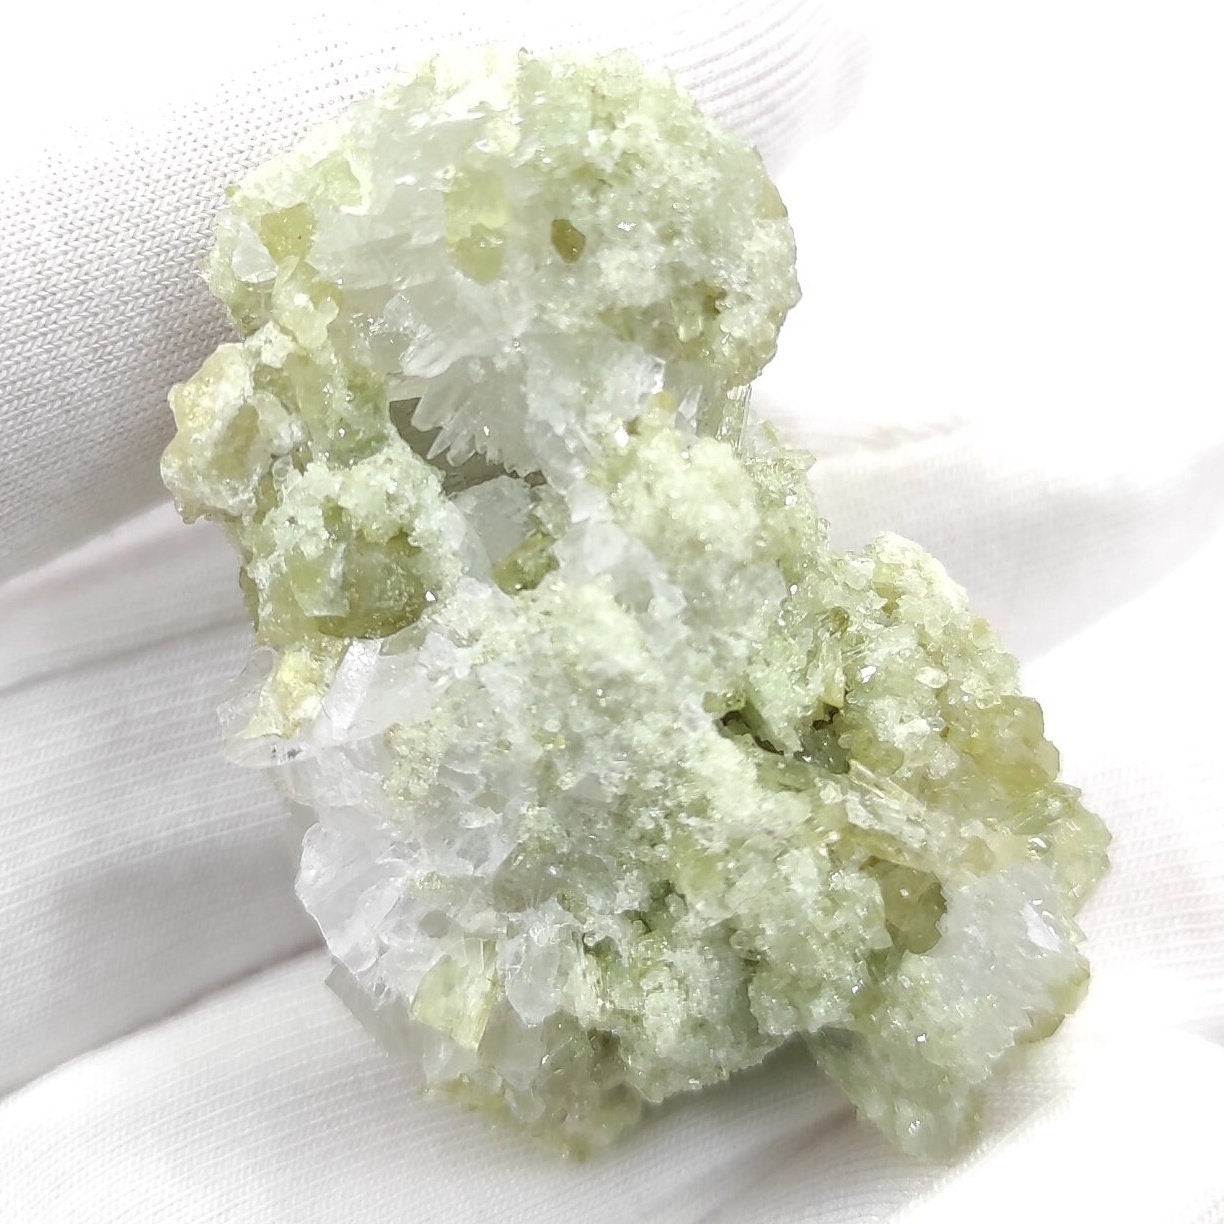 2016 Find - 28g Vesuvianite with Aragonite - Mineral Specimen - Vesuvianite Crystal - Jeffrey Mine, Asbestos, Quebec - Canadian Minerals